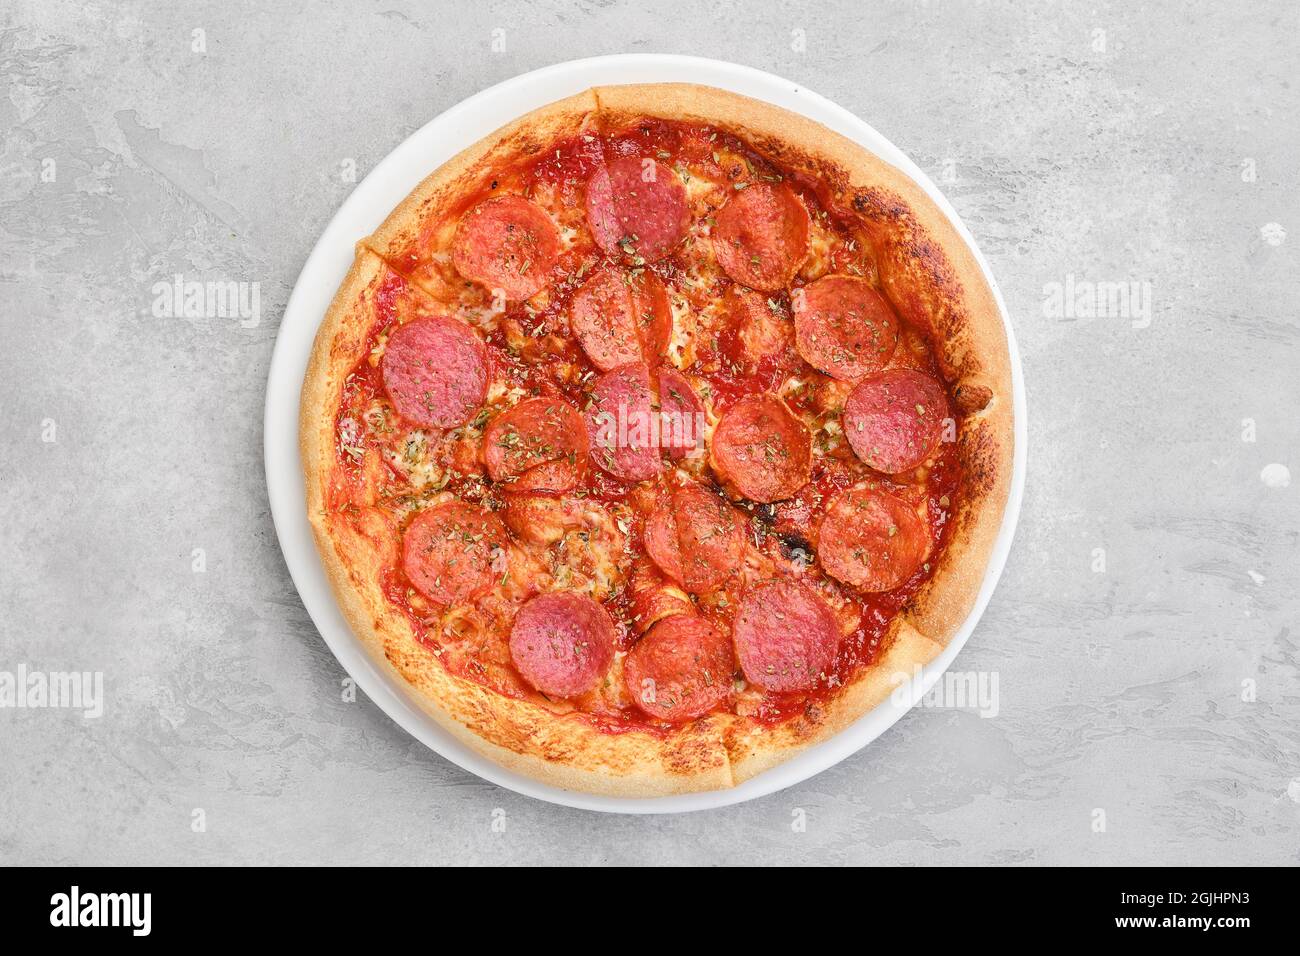 Vue en hauteur d'une petite pizza pepperoni sur une assiette Banque D'Images